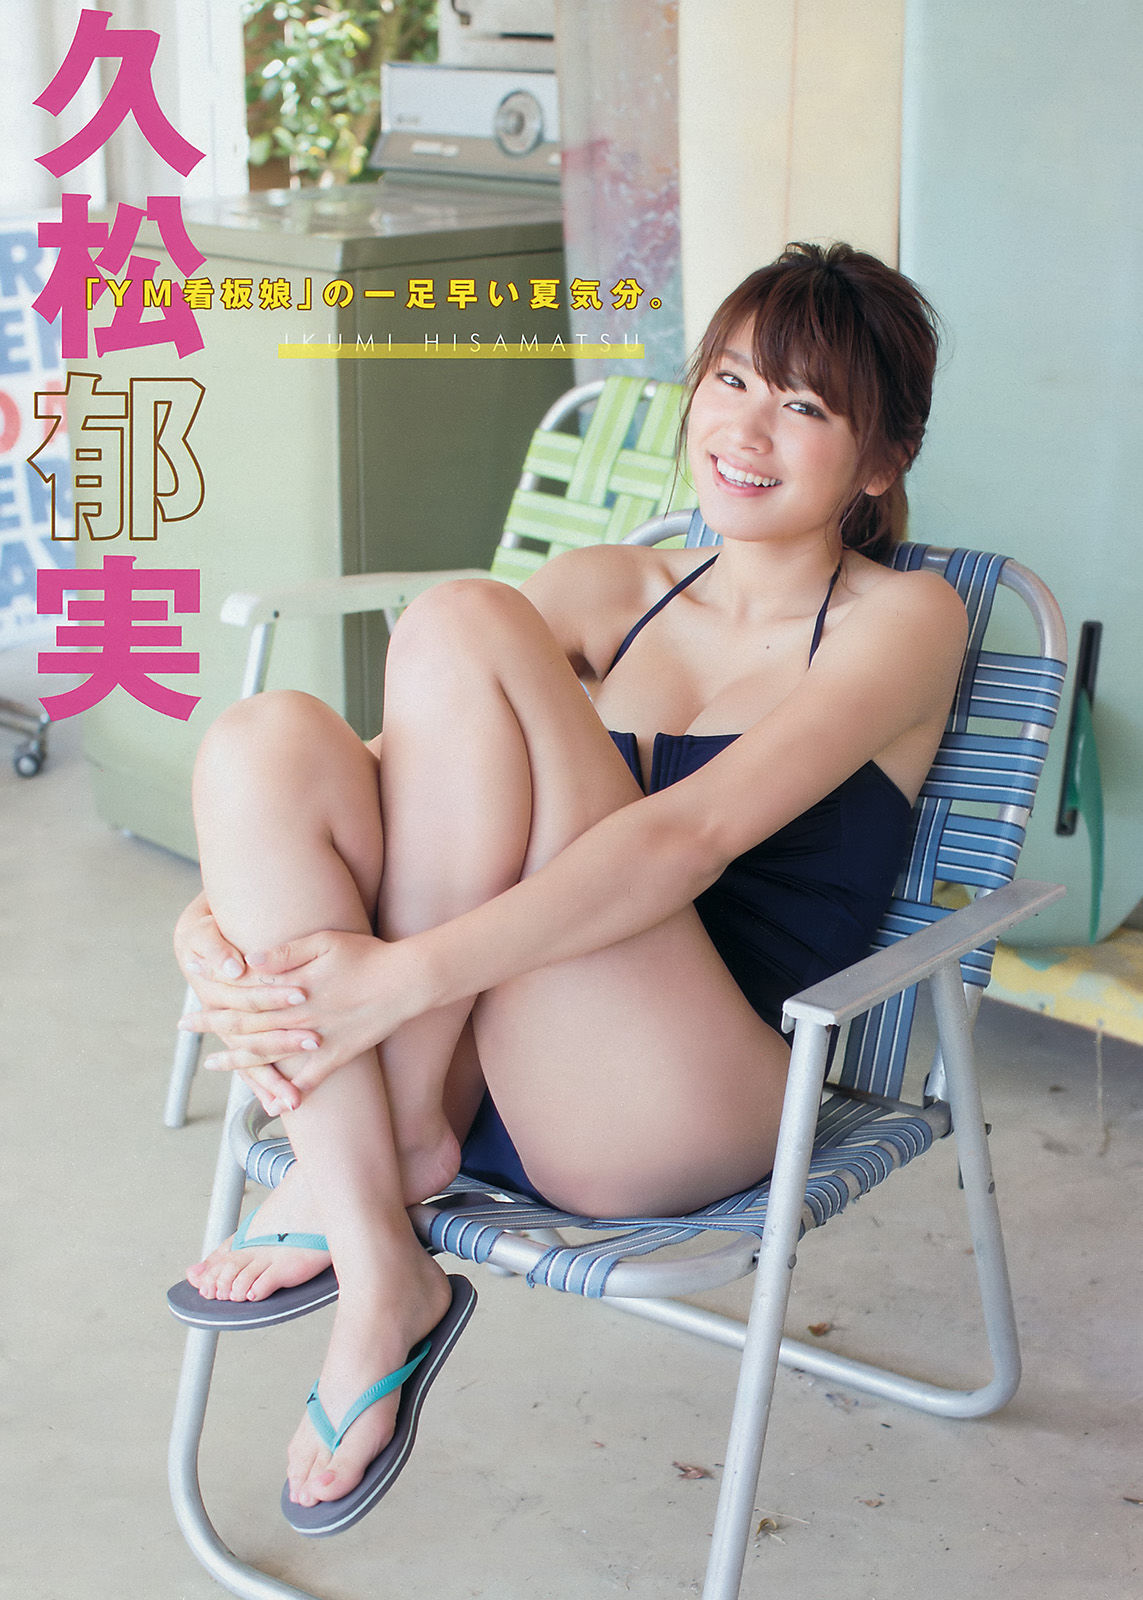 [Young Magazine] Ikumi Hisamatsu 2016 Nr. 21-22 Foto Seite 6 No.976bcf